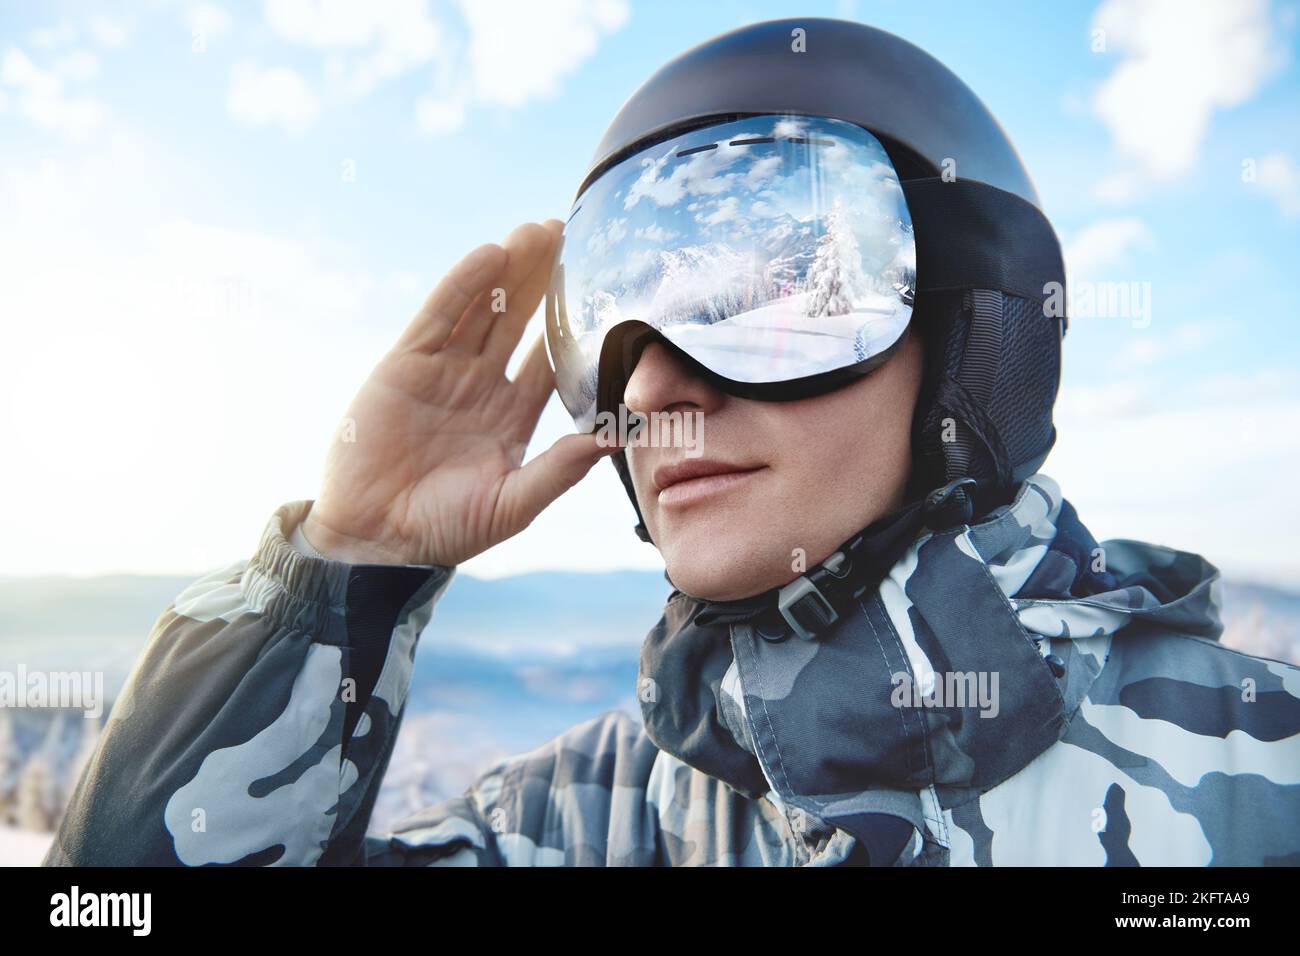 Retrato del hombre en el cielo azul de fondo sostiene gafas de esquí con el reflejo de las montañas nevadas..Deportes de invierno. Foto de stock